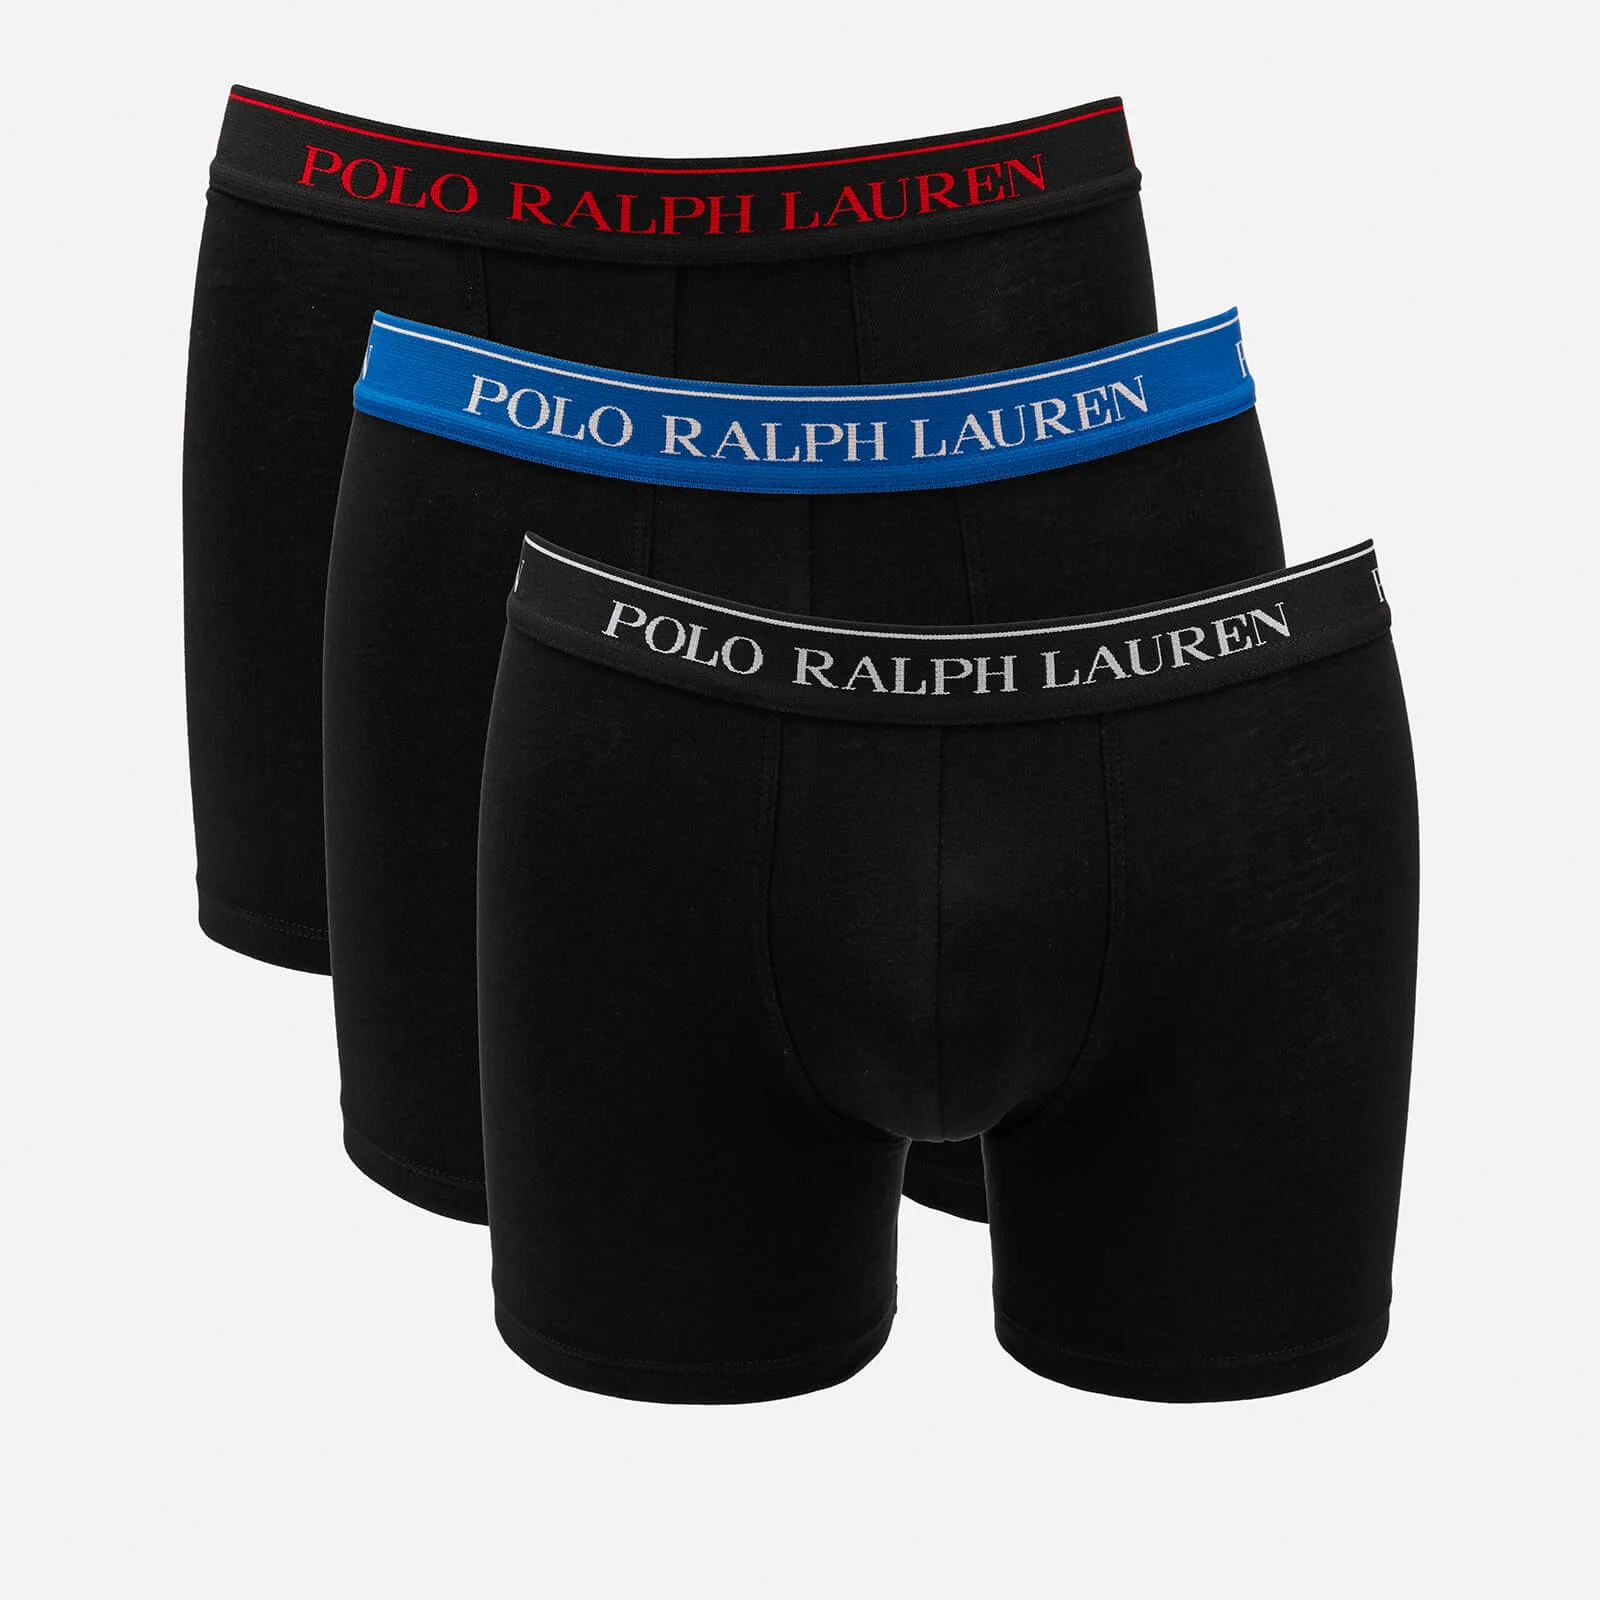 Polo Ralph Lauren Men's 3 Pack Boxer Briefs - Black Image 1